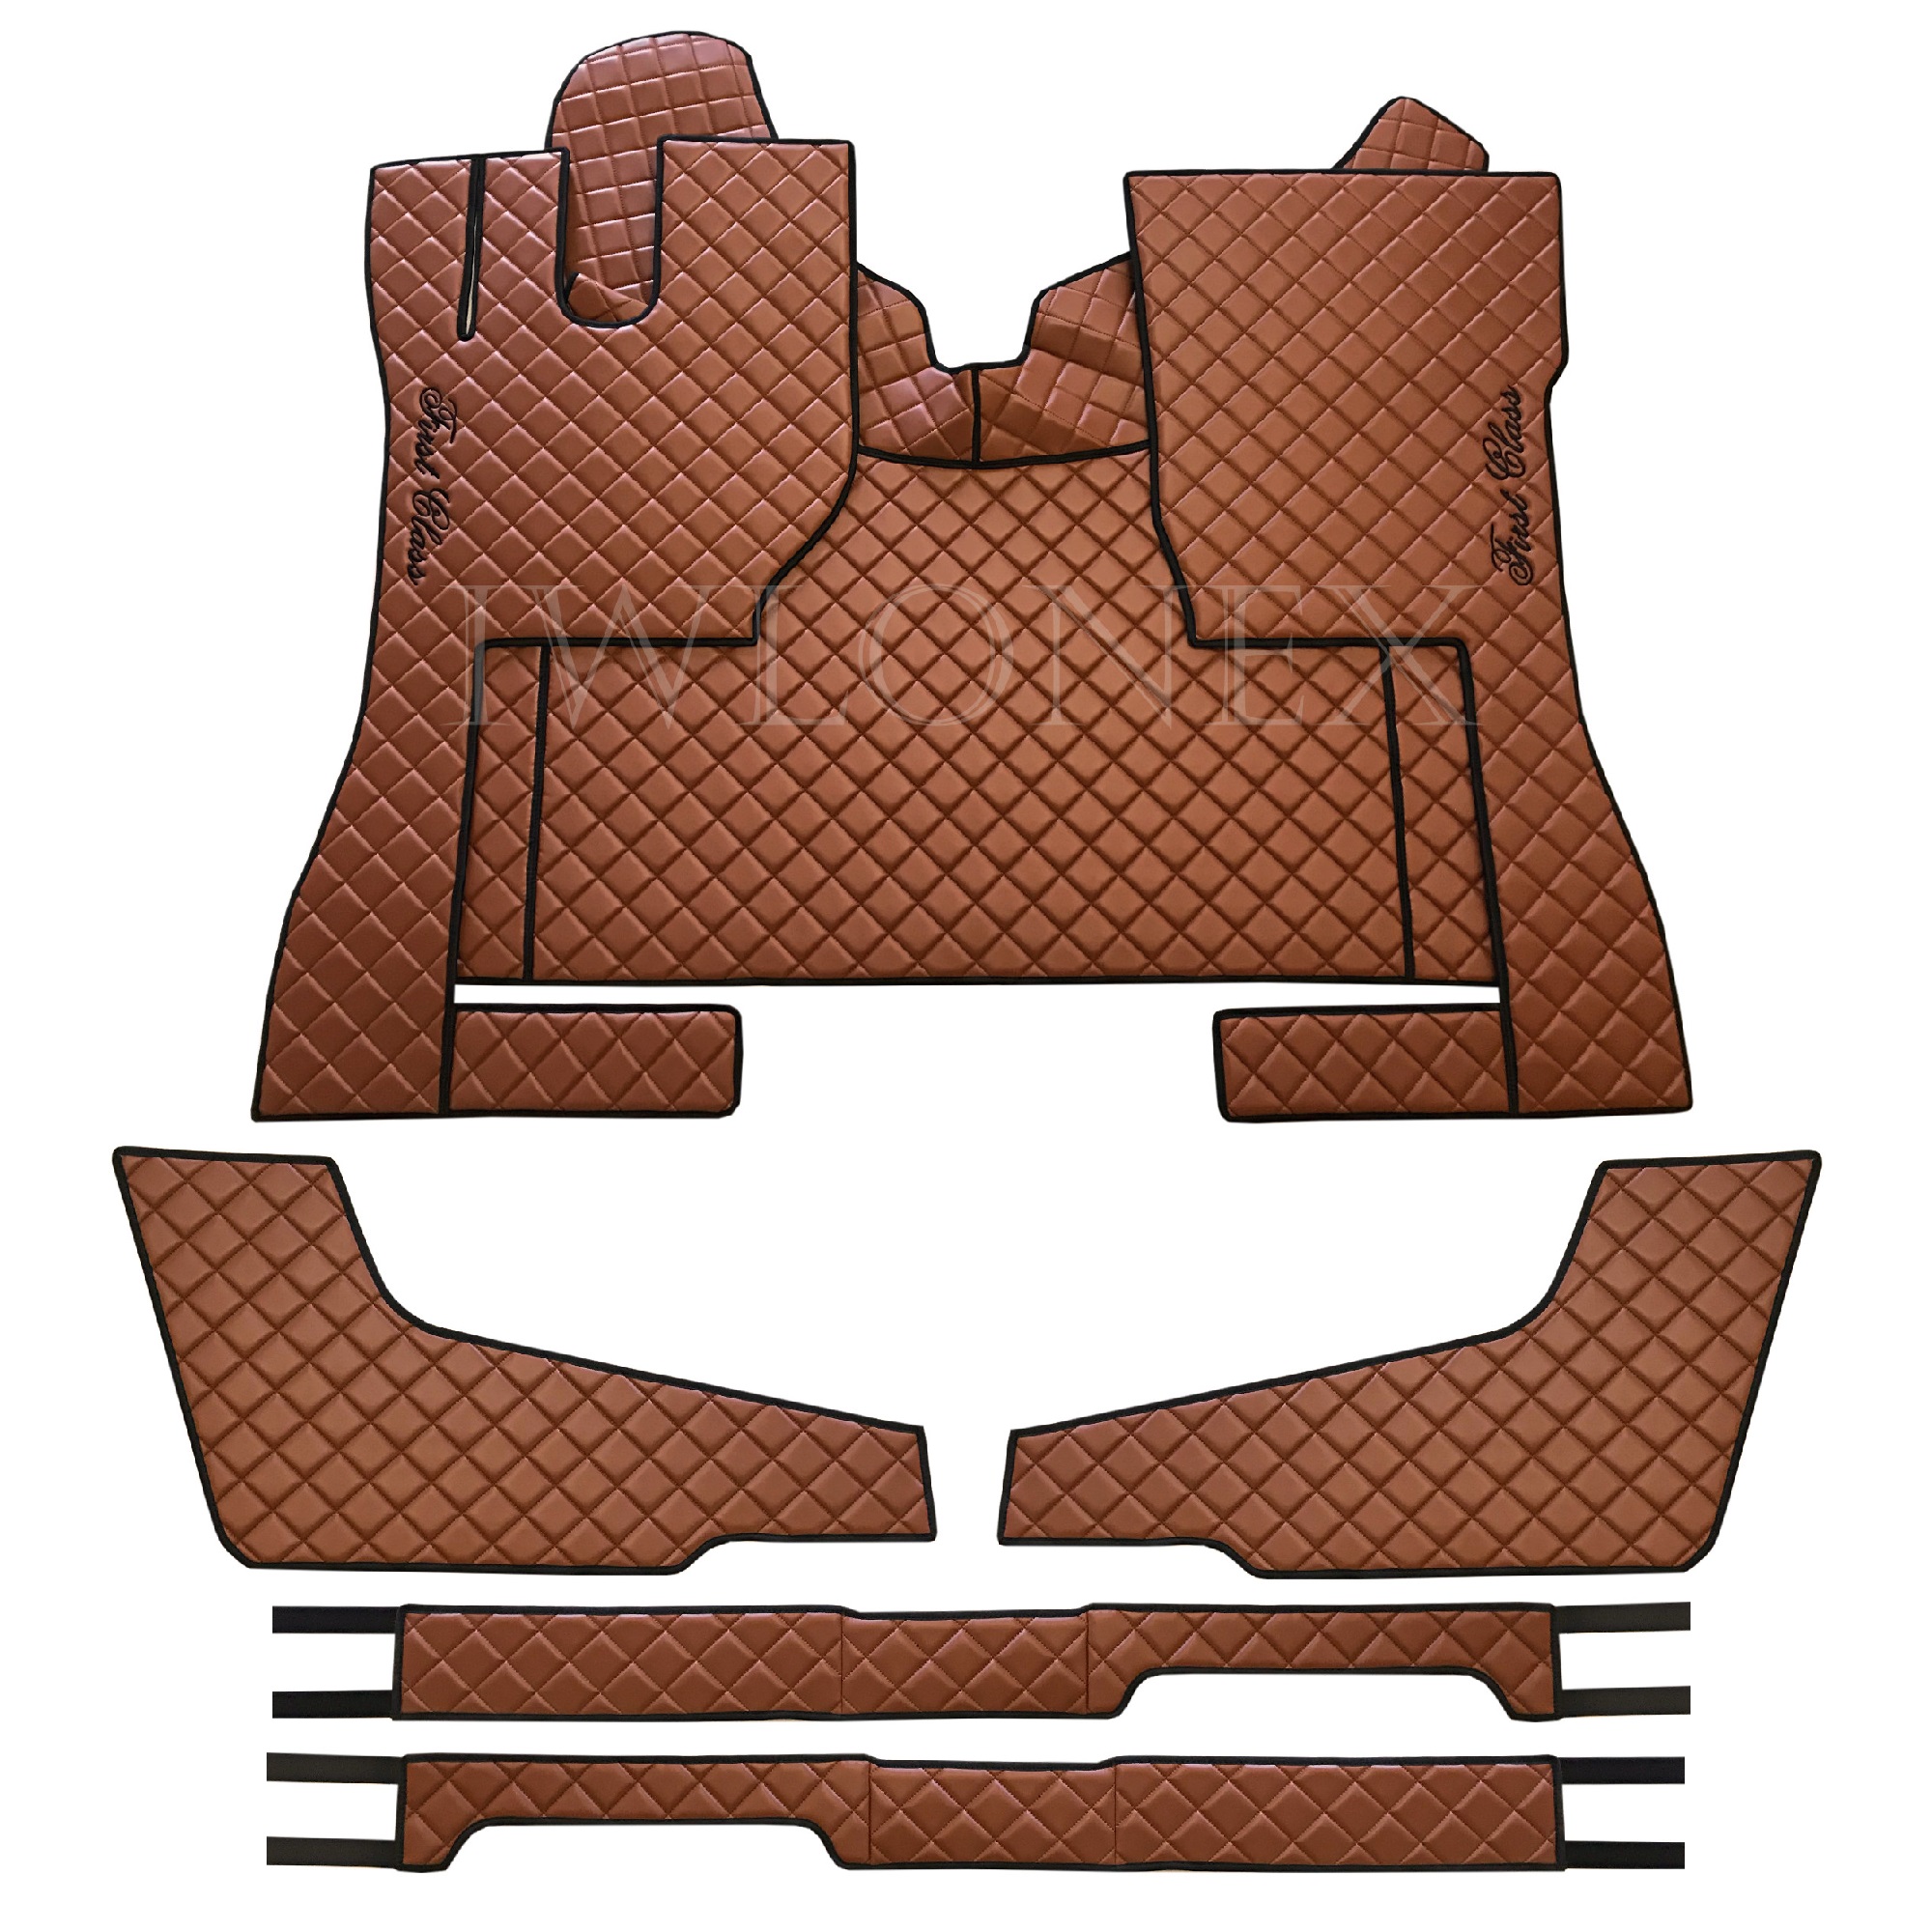 Fußmatten+Sitzsockelverkleidung+Türverkleidung passend für VOLVO FH4 -  Braun - Iwlonex